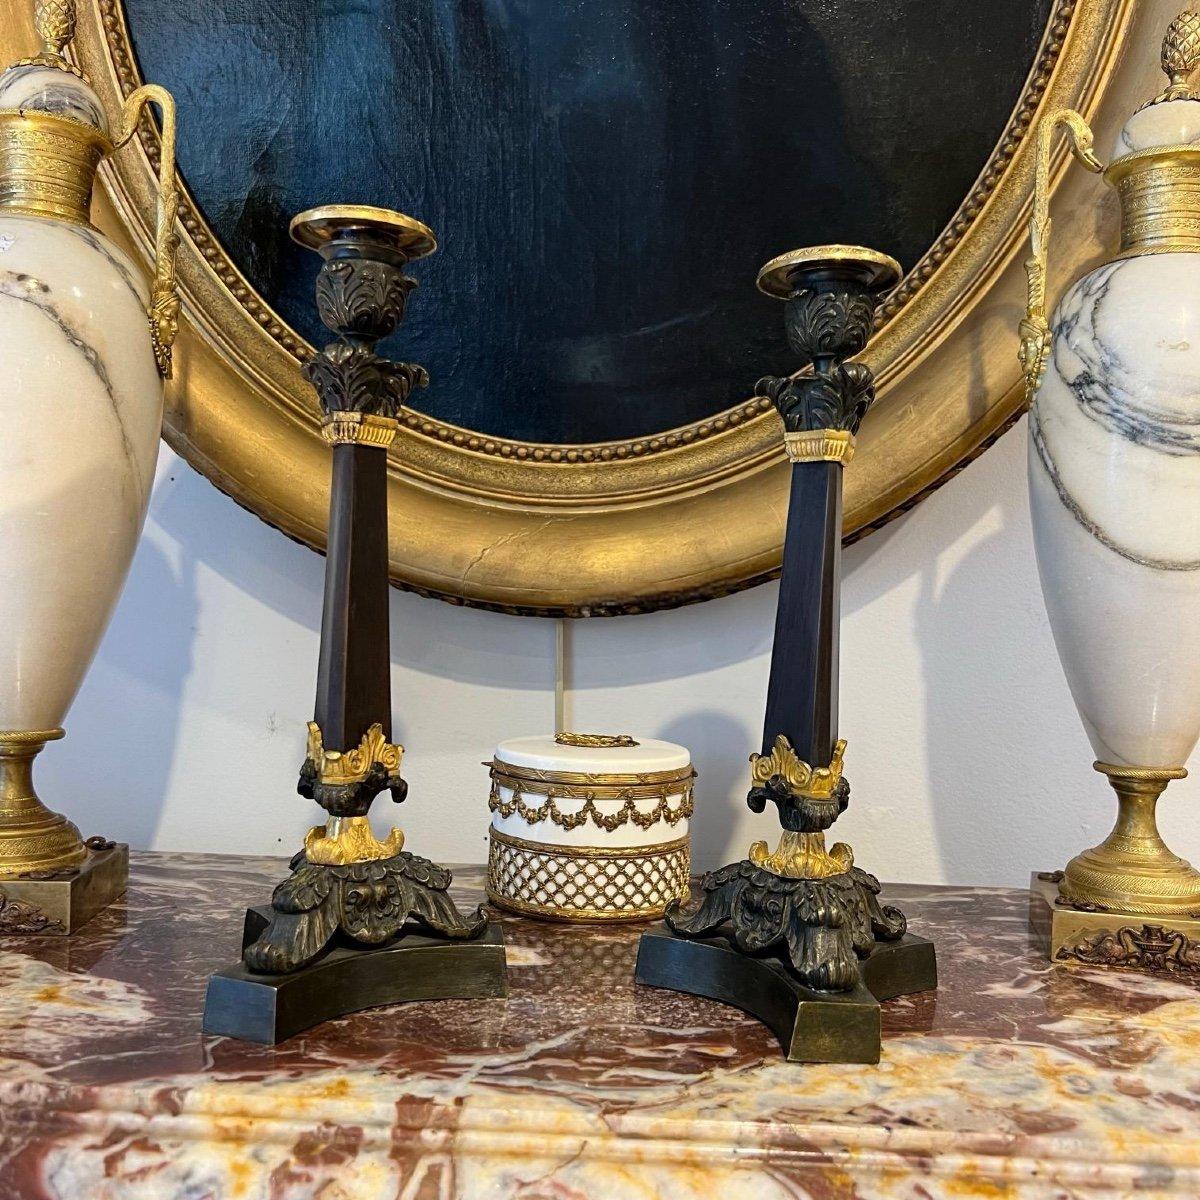 Wir präsentieren Ihnen dieses seltene Paar Kerzenständer mit doppelter Patina aus der Zeit der bourbonischen Restauration in Frankreich im 19. Der braun-patinierte Stiel mit einer dreiseitigen Abschrägung an der Spitze verleiht der Form jedes